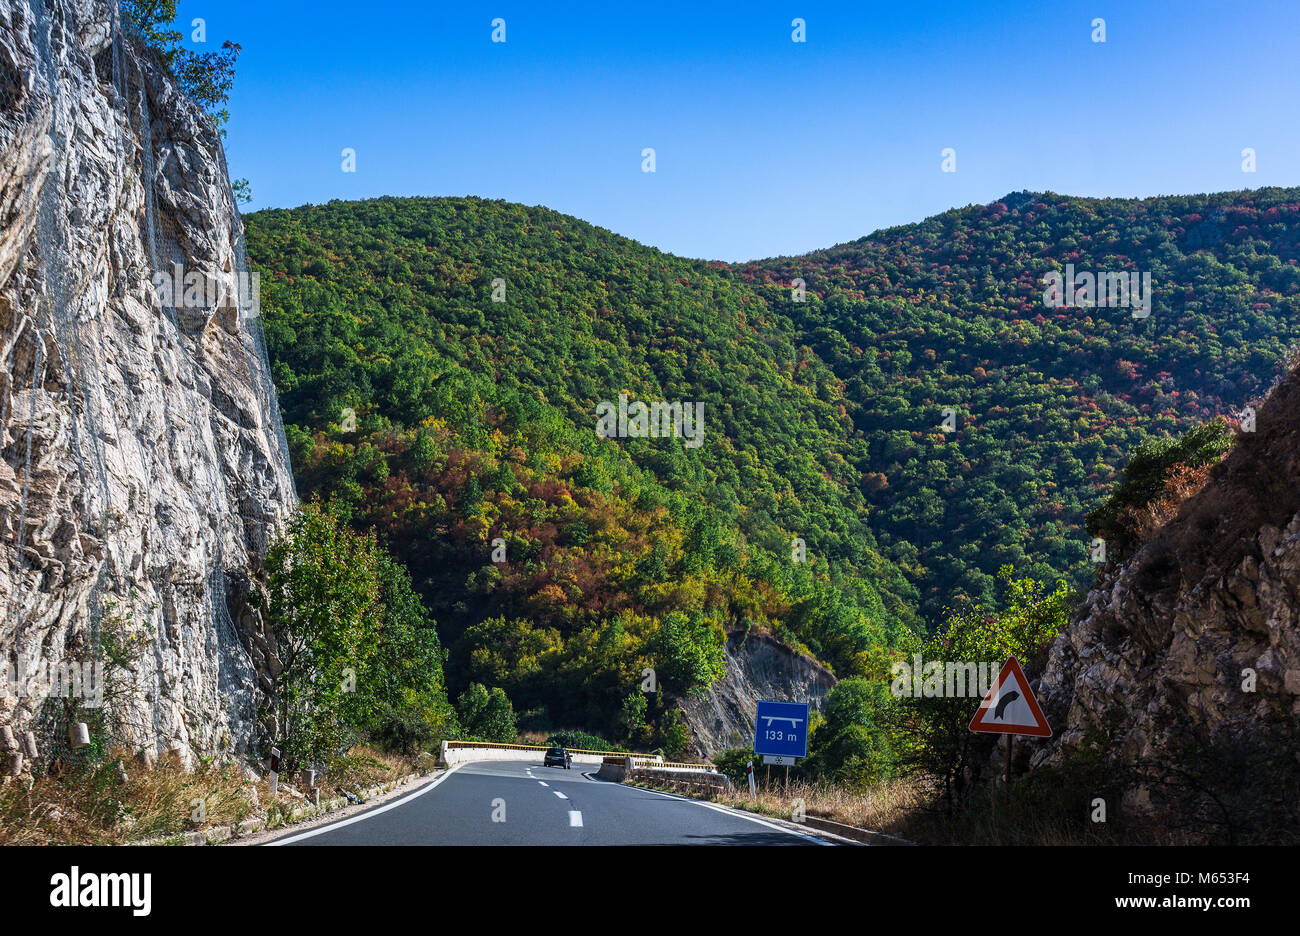 Strada di Montagna in Macedonia. Alta roccia protetti da rete in acciaio. Bel paesaggio con colorate colline coperte di bosco Foto Stock